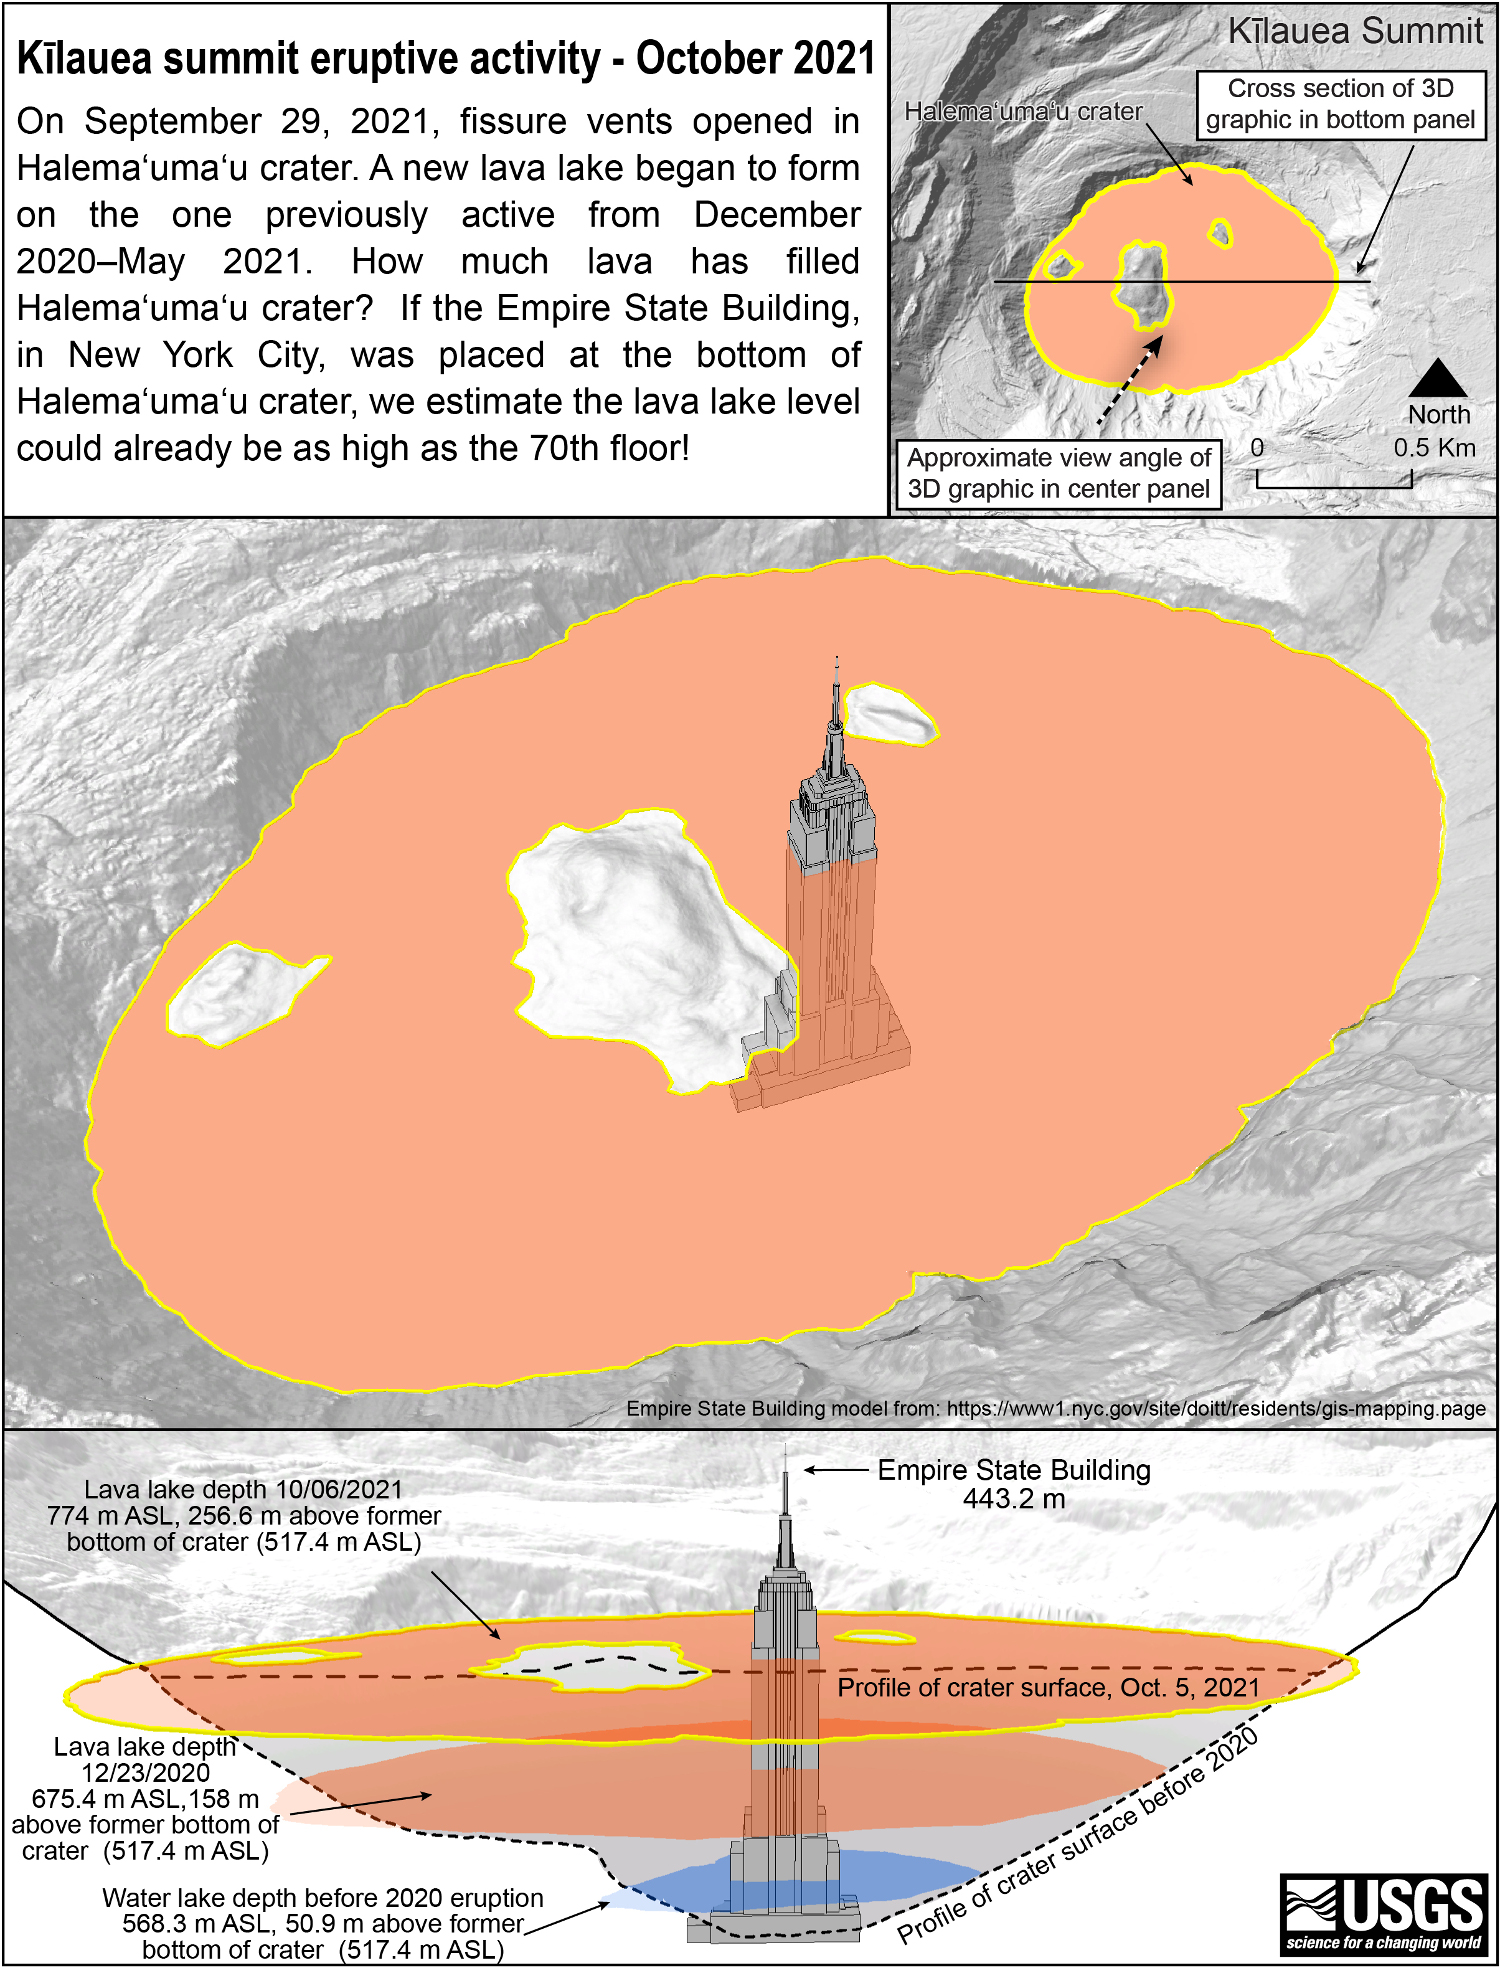 Kilaua lava lake depth increases